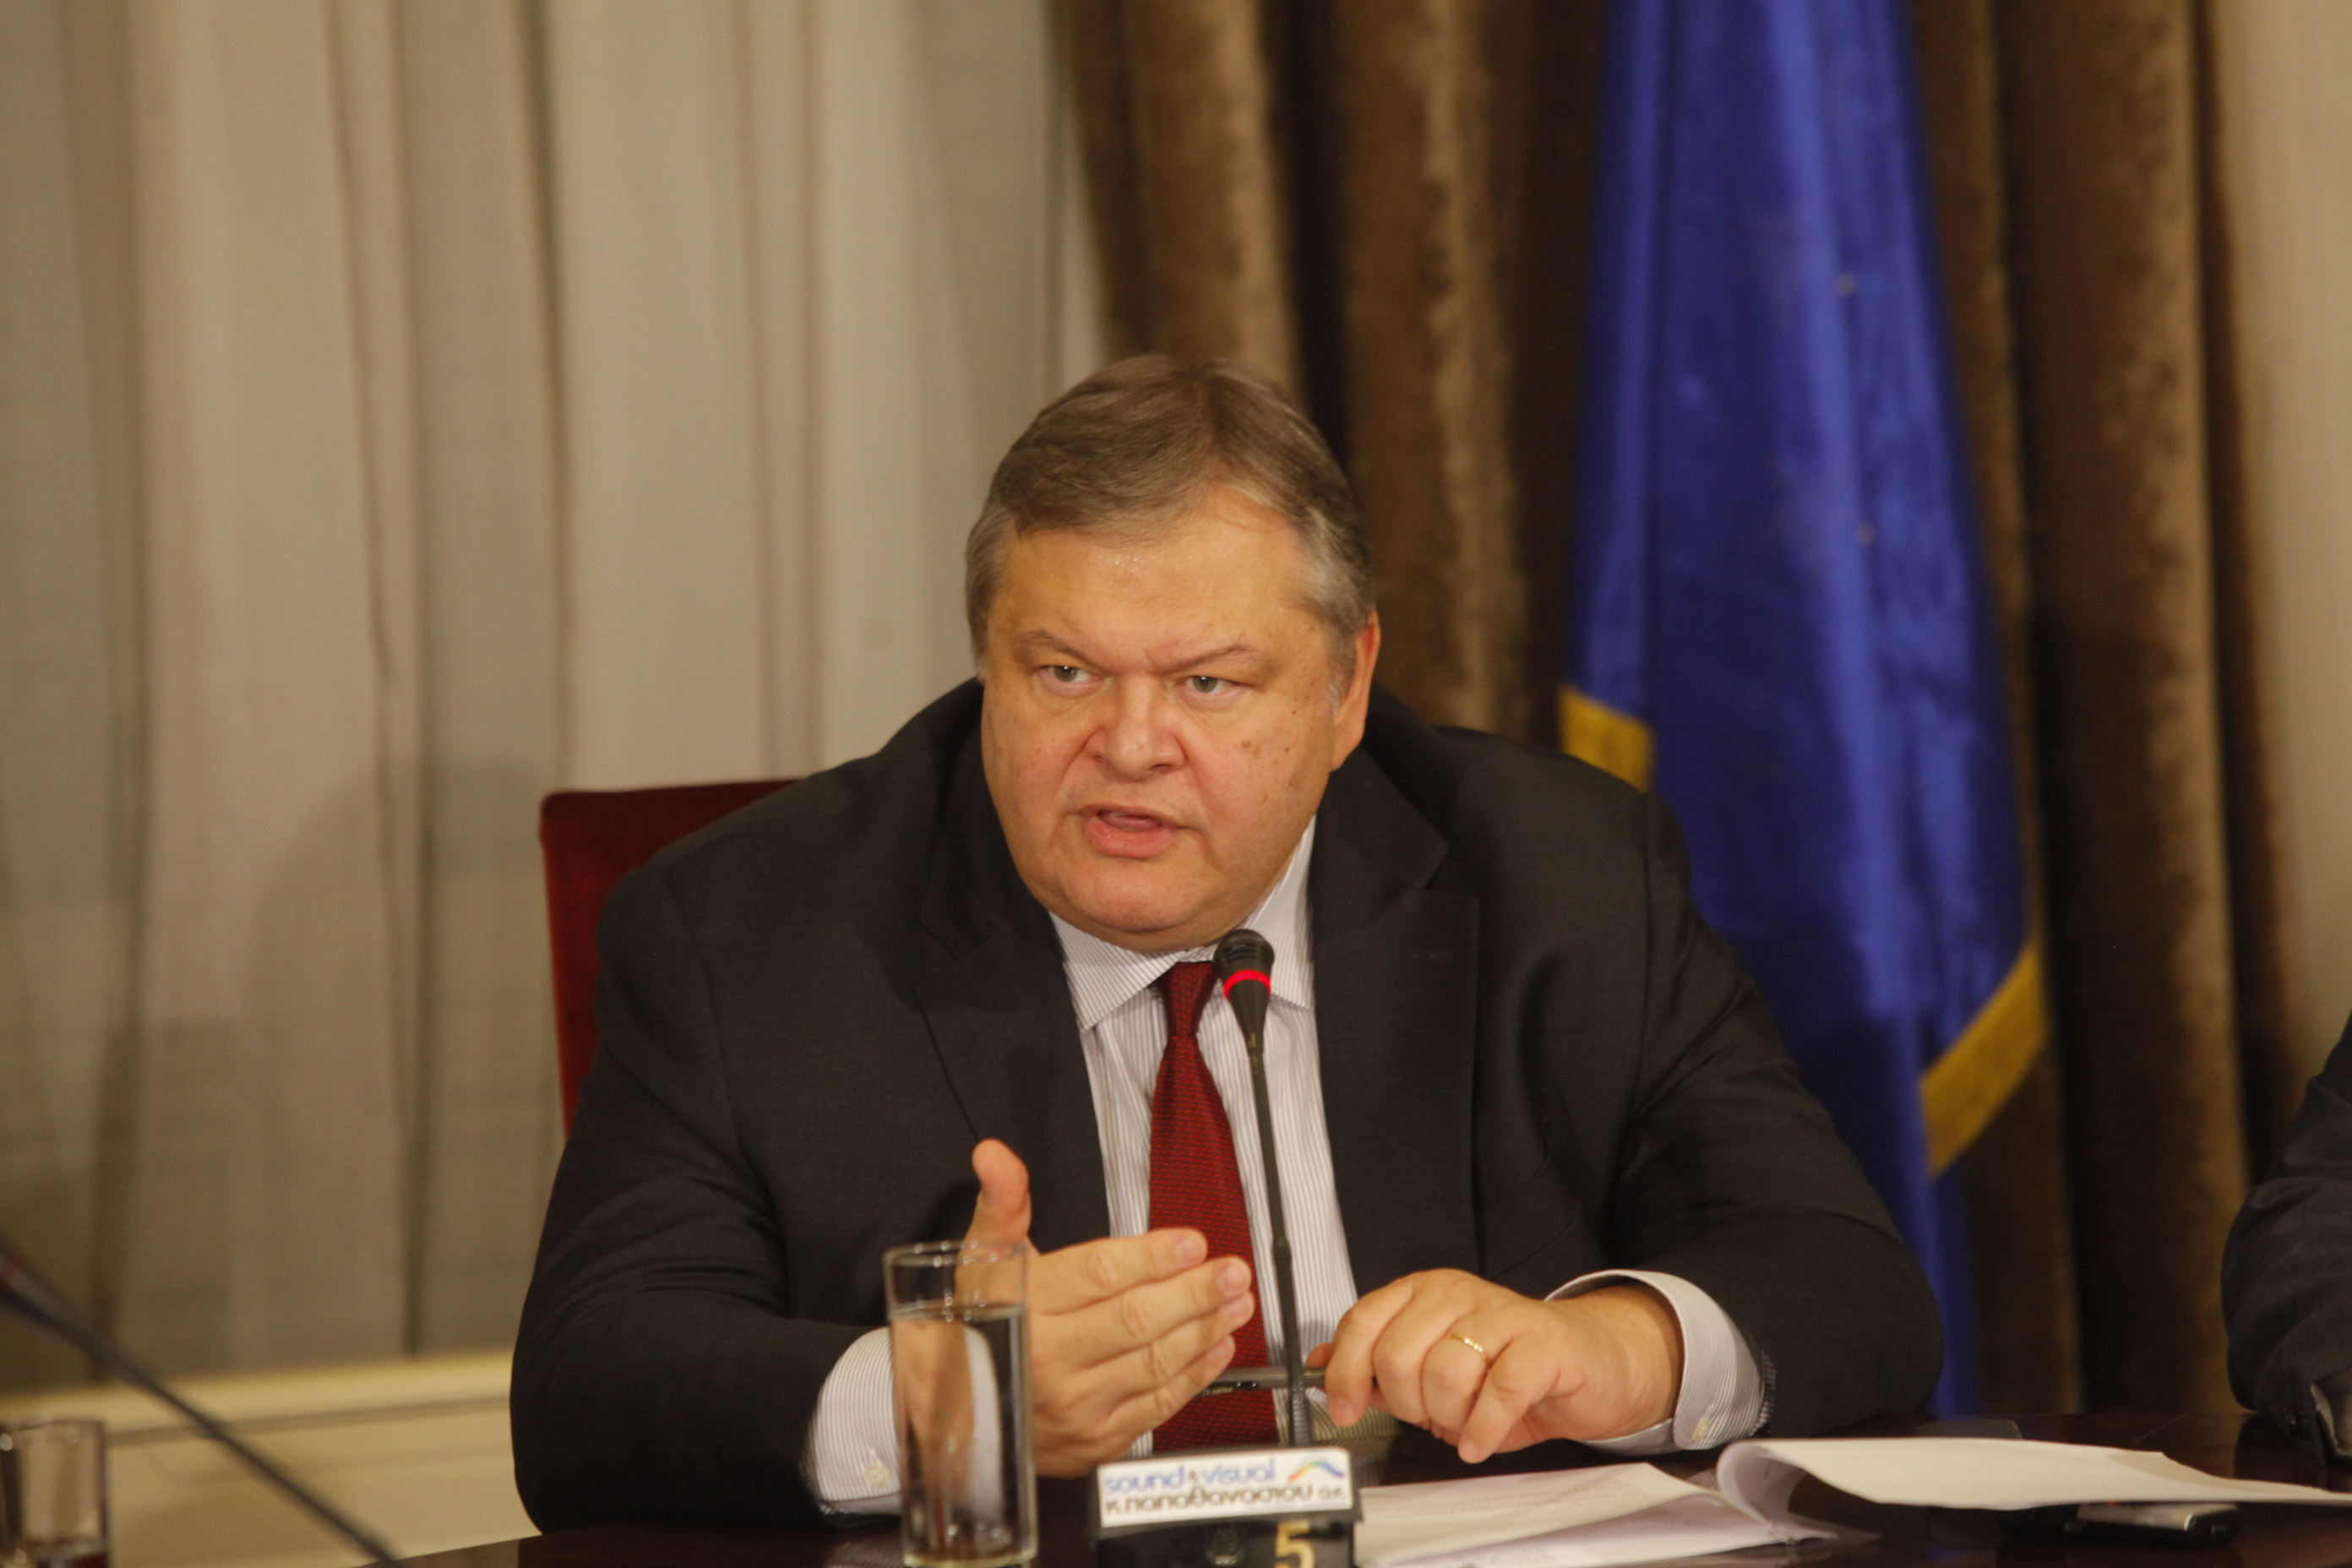 Βενιζέλος για Κριμαία: “Η εφαρμογή κυρώσεων είναι μήνυμα αποφασιστικότητας της ΕΕ”